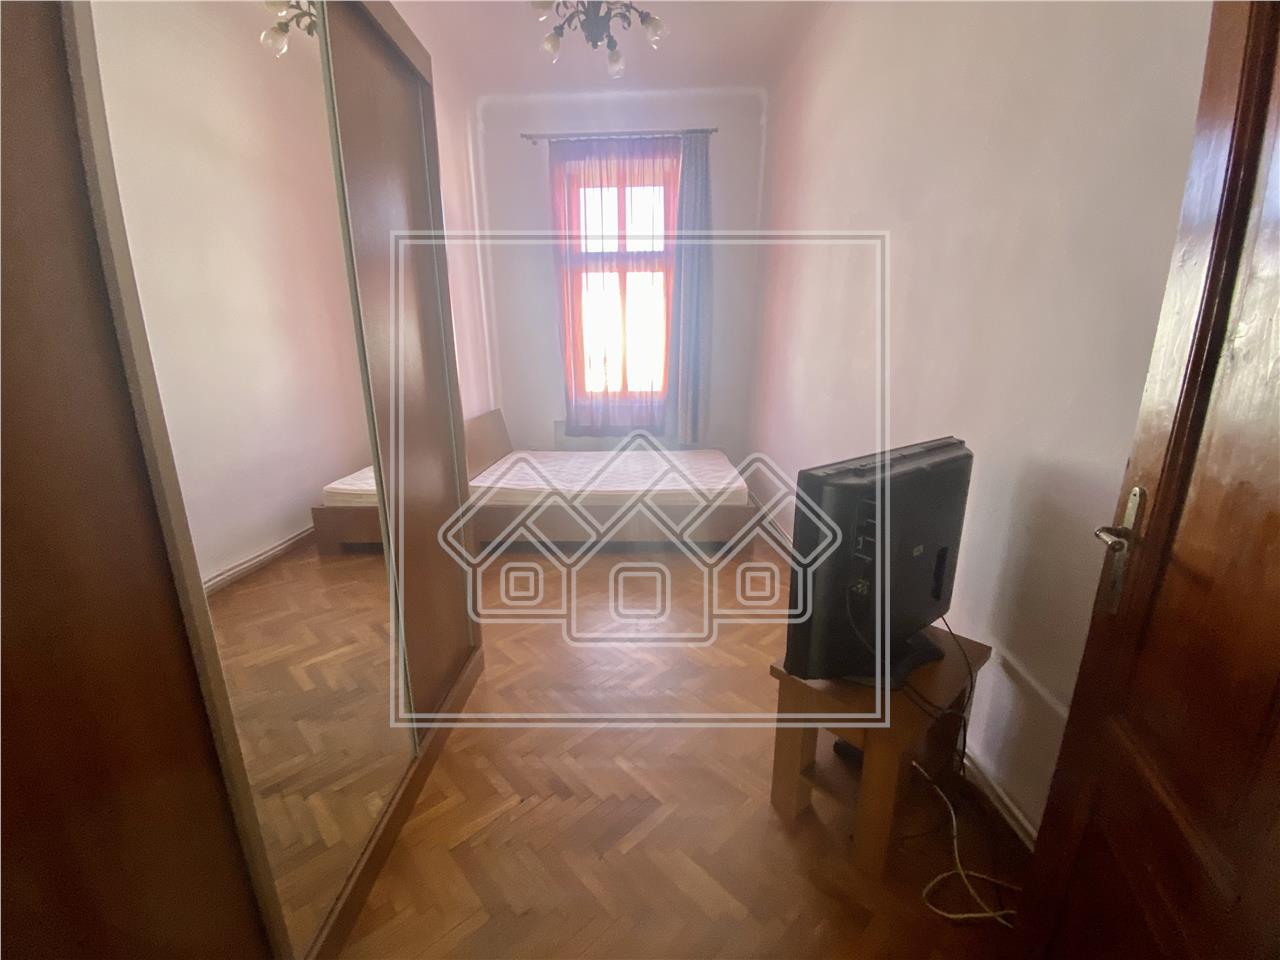 Apartament de vanzare in Sibiu - 3 camere, zona Blv. Victoriei